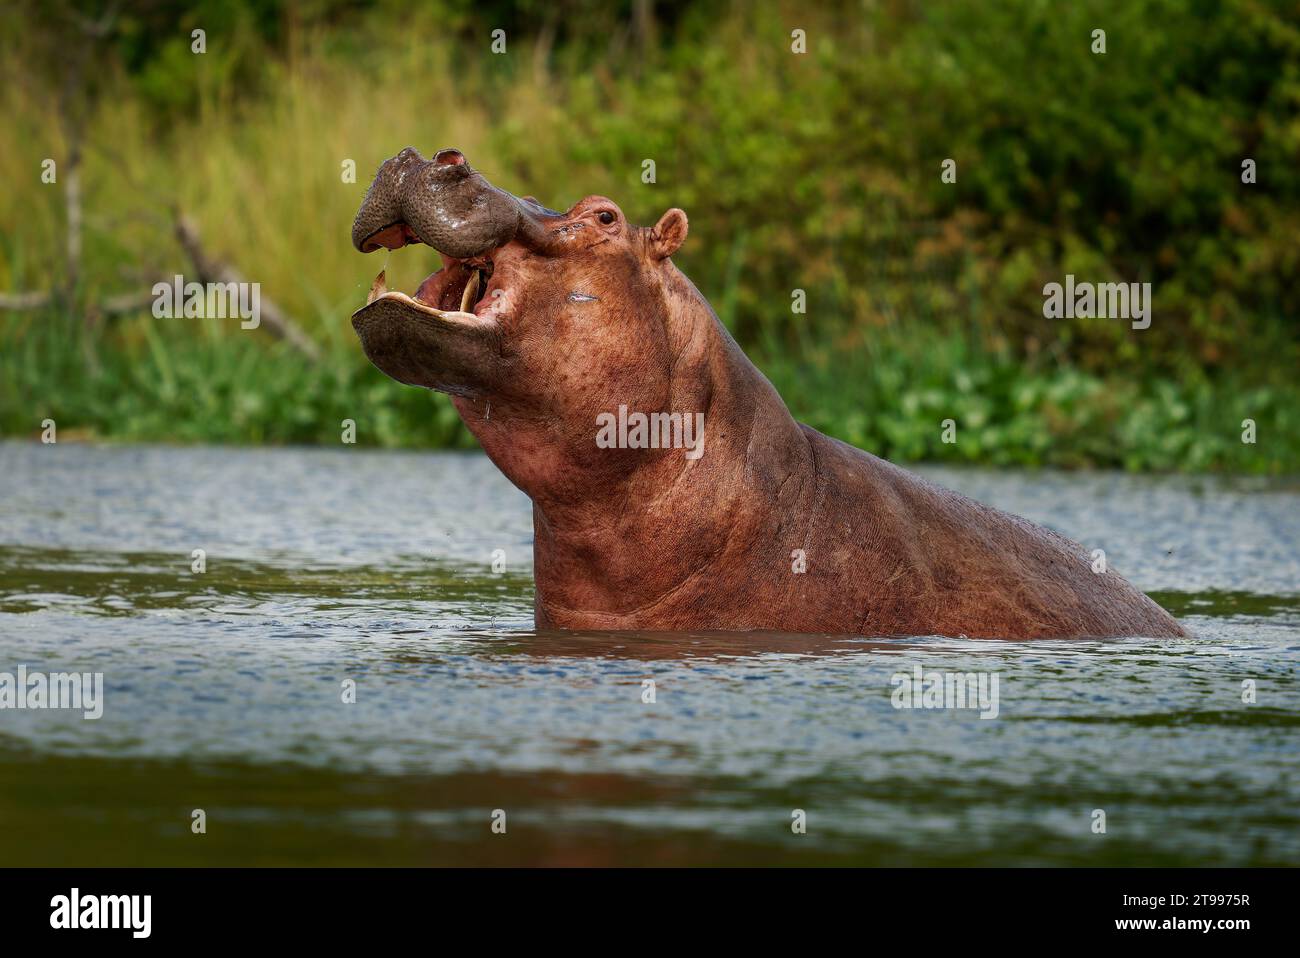 Hippopotamus - Hippopotamus amphibius oder Hippo ist groß, reine Pflanzenfresser, semiaquatic Säugetier beheimatet in Afrika südlich der Sahara. Kopf aus dem wa Stockfoto